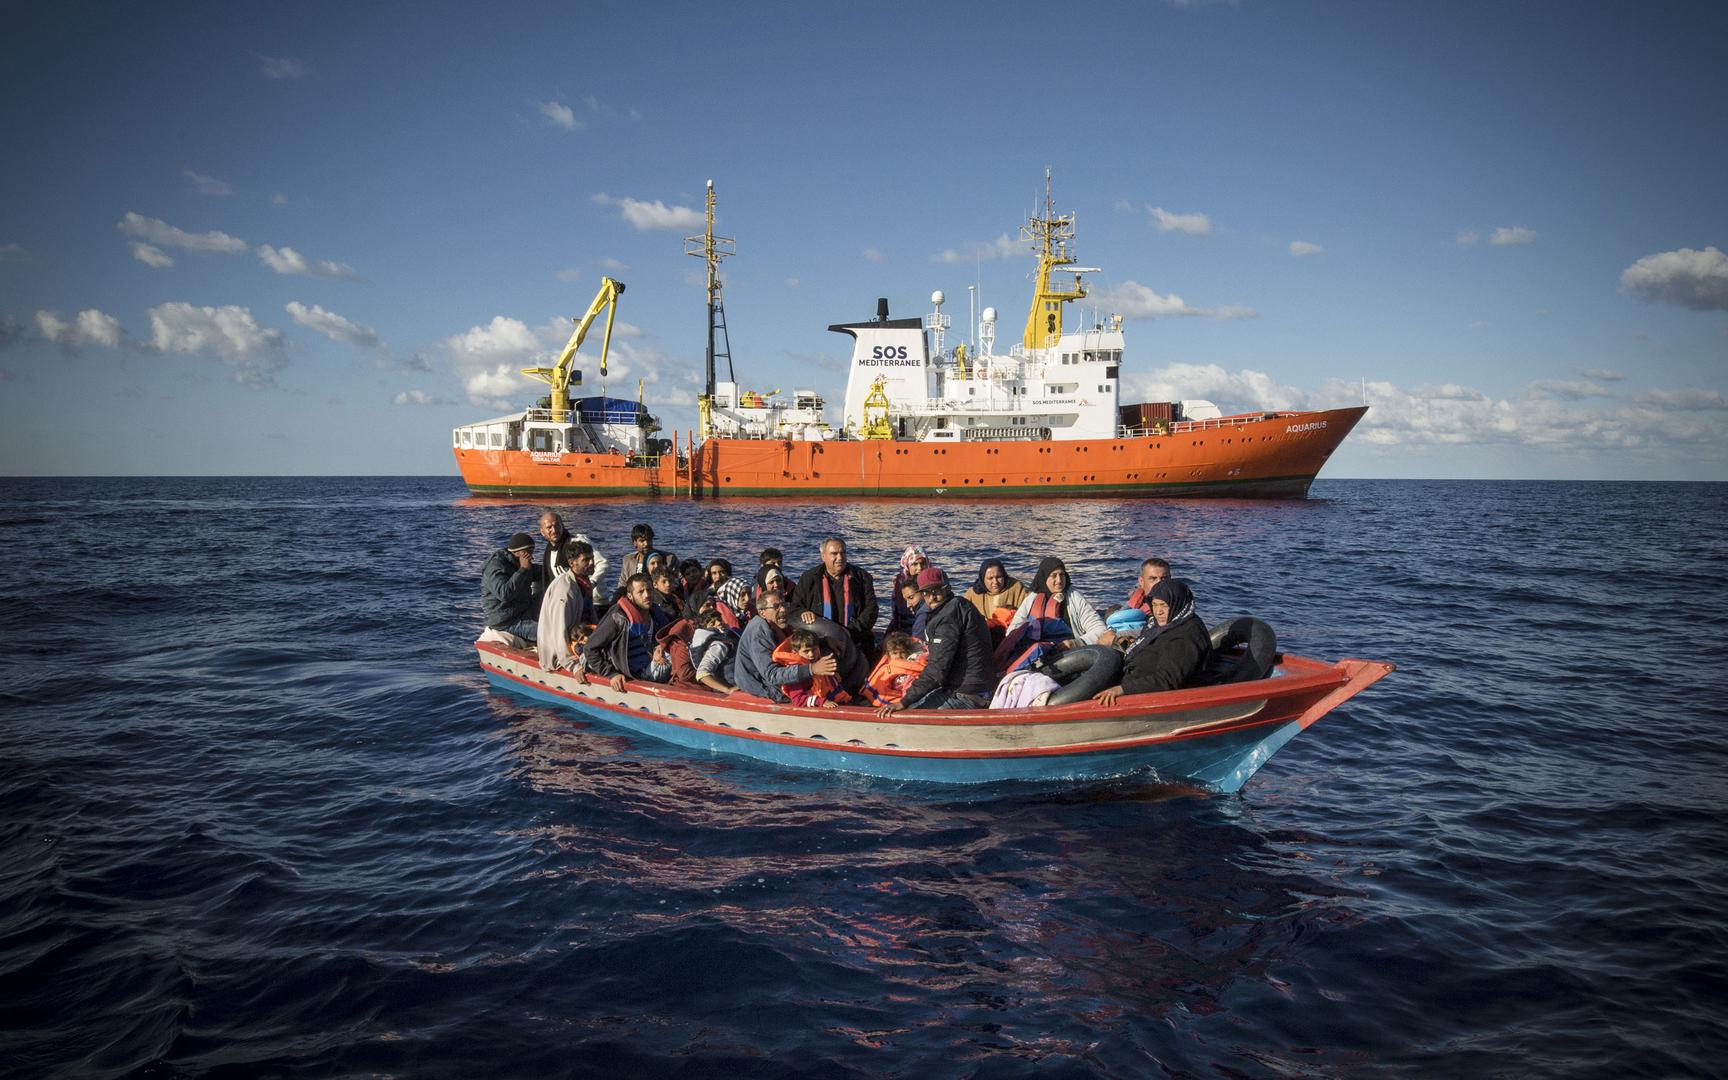 Una barca di legno con 29 persone a bordo, perlopiù siriane, poco prima del salvataggio e trasbordo sull’Aquarius. 10 ottobre 2017.